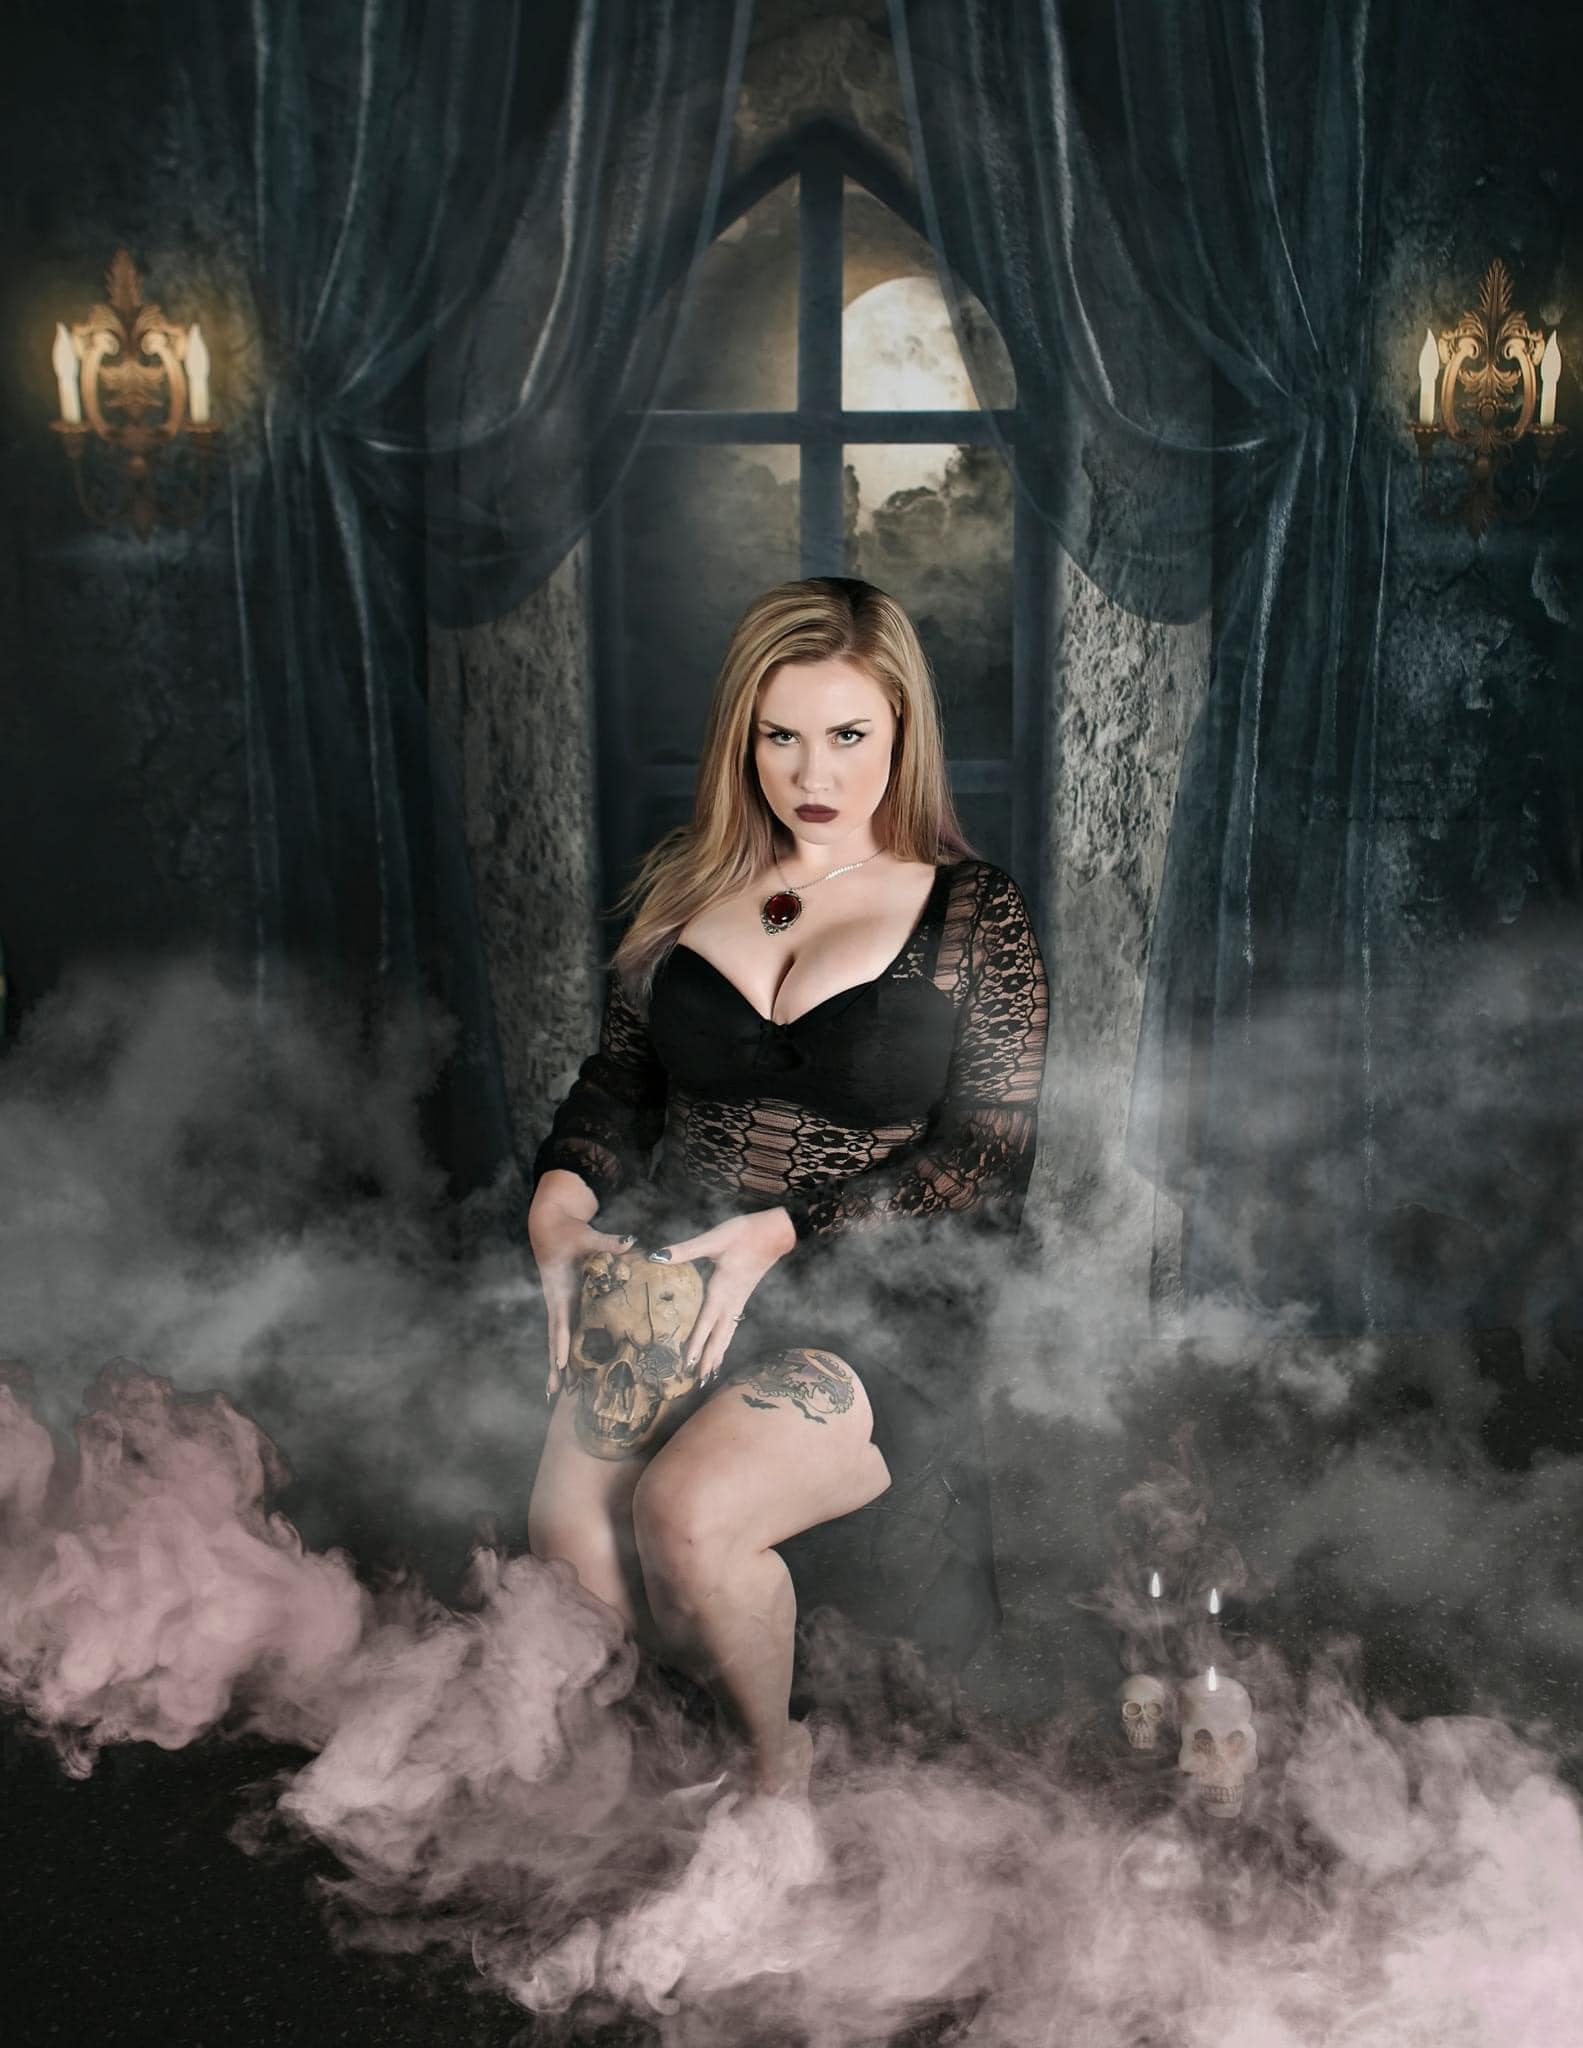 Kate Halloween Hintergrund Schloss Nacht Mond von Uta Mueller Photography